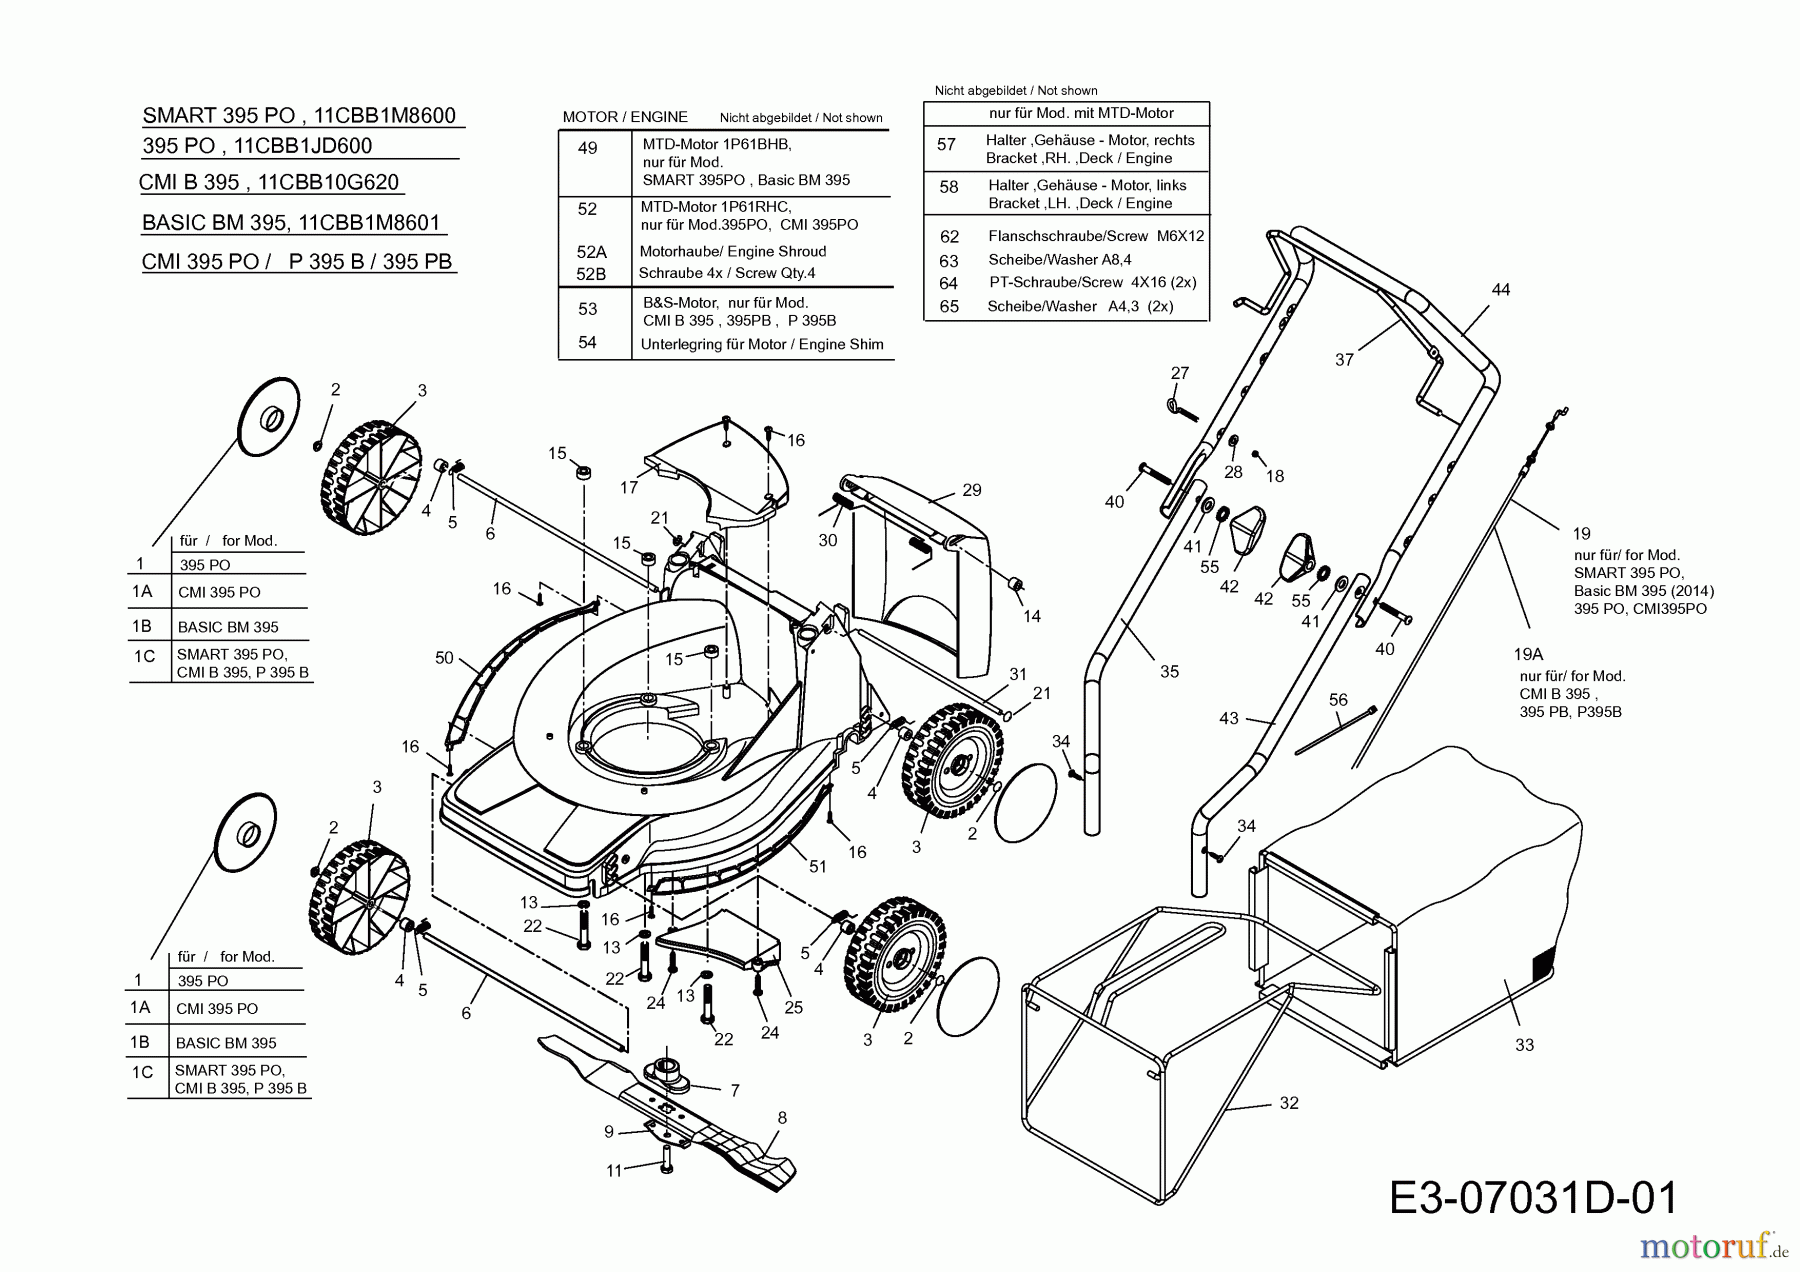  Basic Motormäher Basic BM 395 11CBB1M8601  (2015) Grundgerät